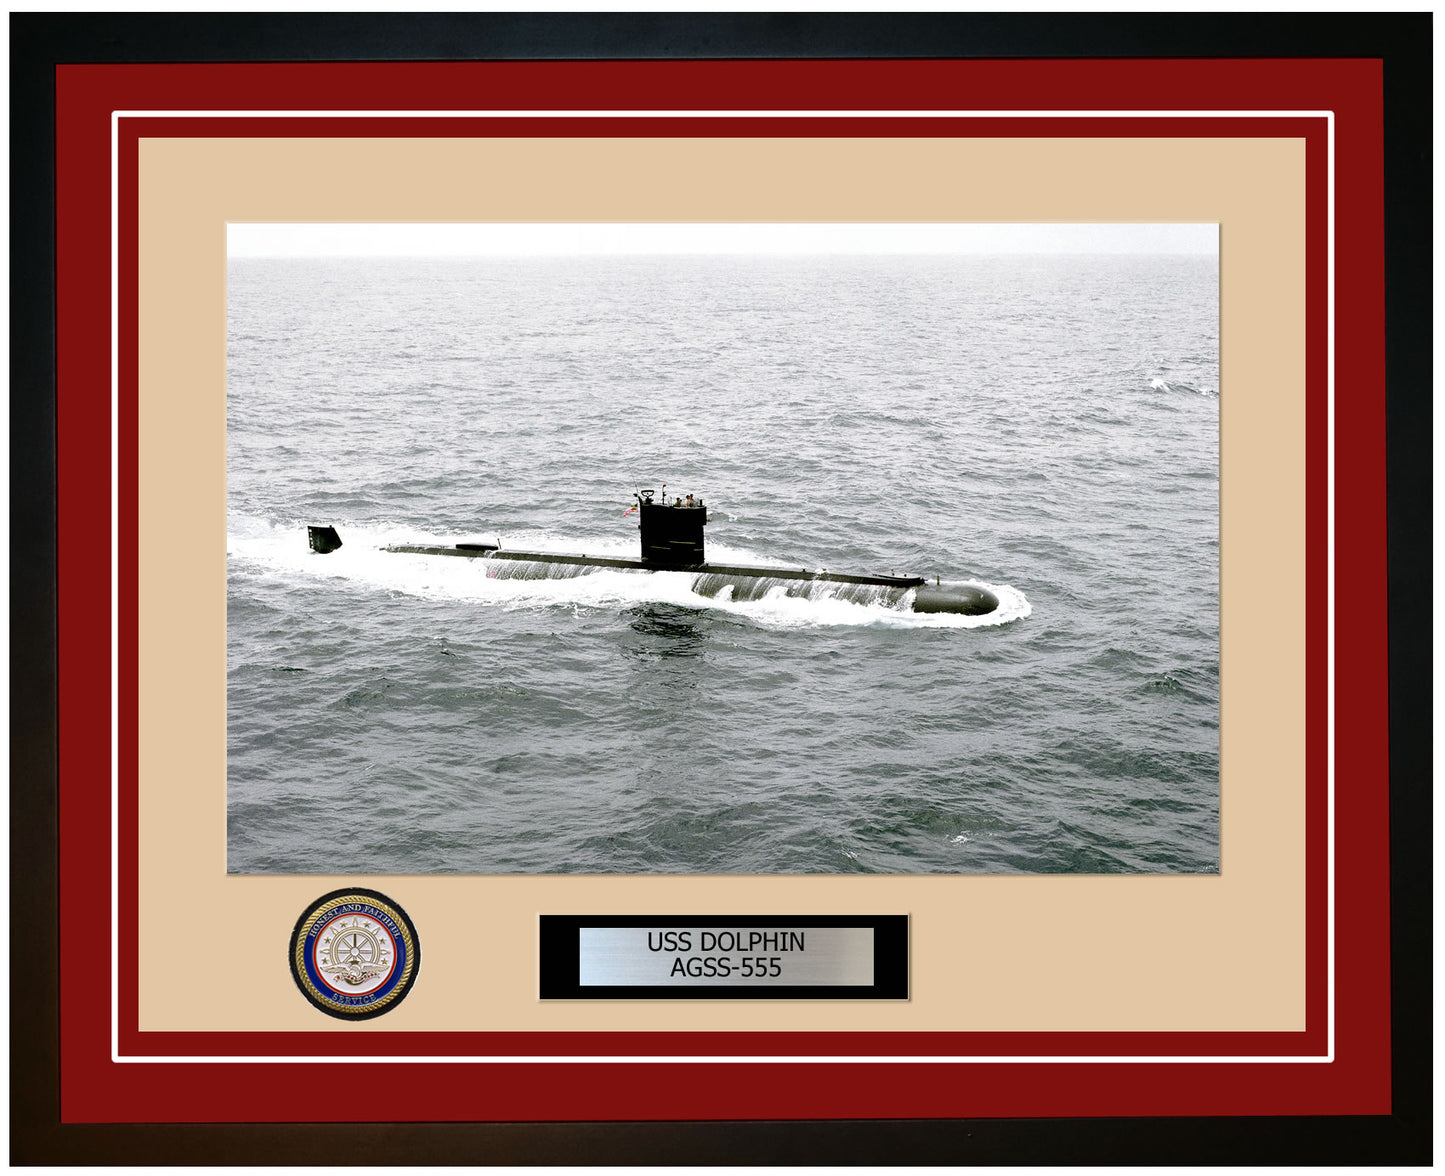 USS Dolphin AGSS-555 Framed Navy Ship Photo Burgundy